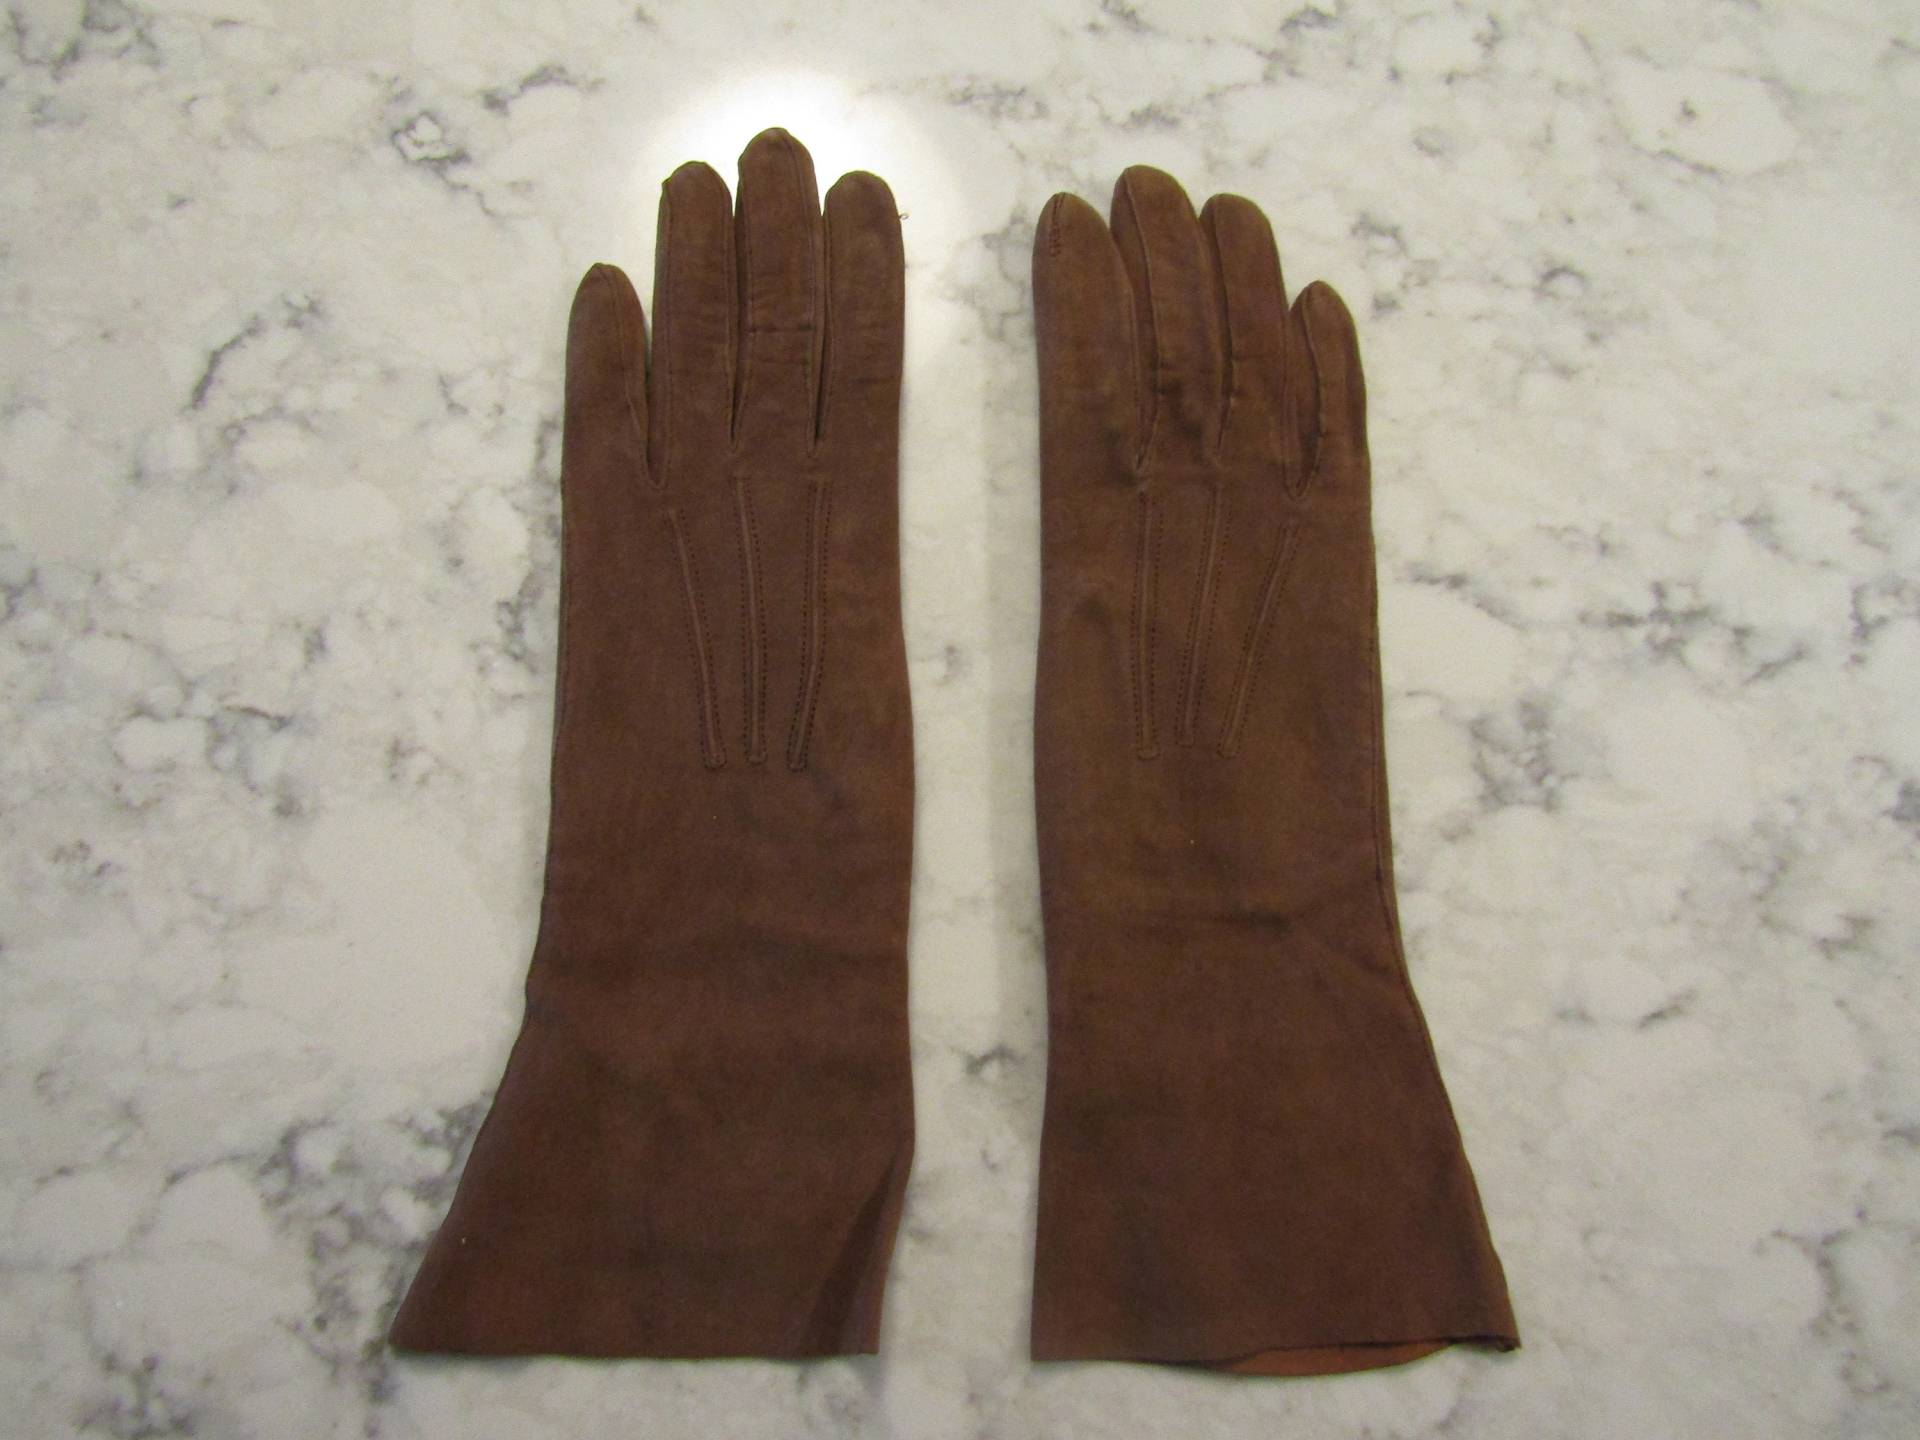 Vintage Tabakbraun Kid Wildleder Handschuhe-Preowned -10.5" Armband LängeGröße 6Auktion #1721-1022 von PrimaMona